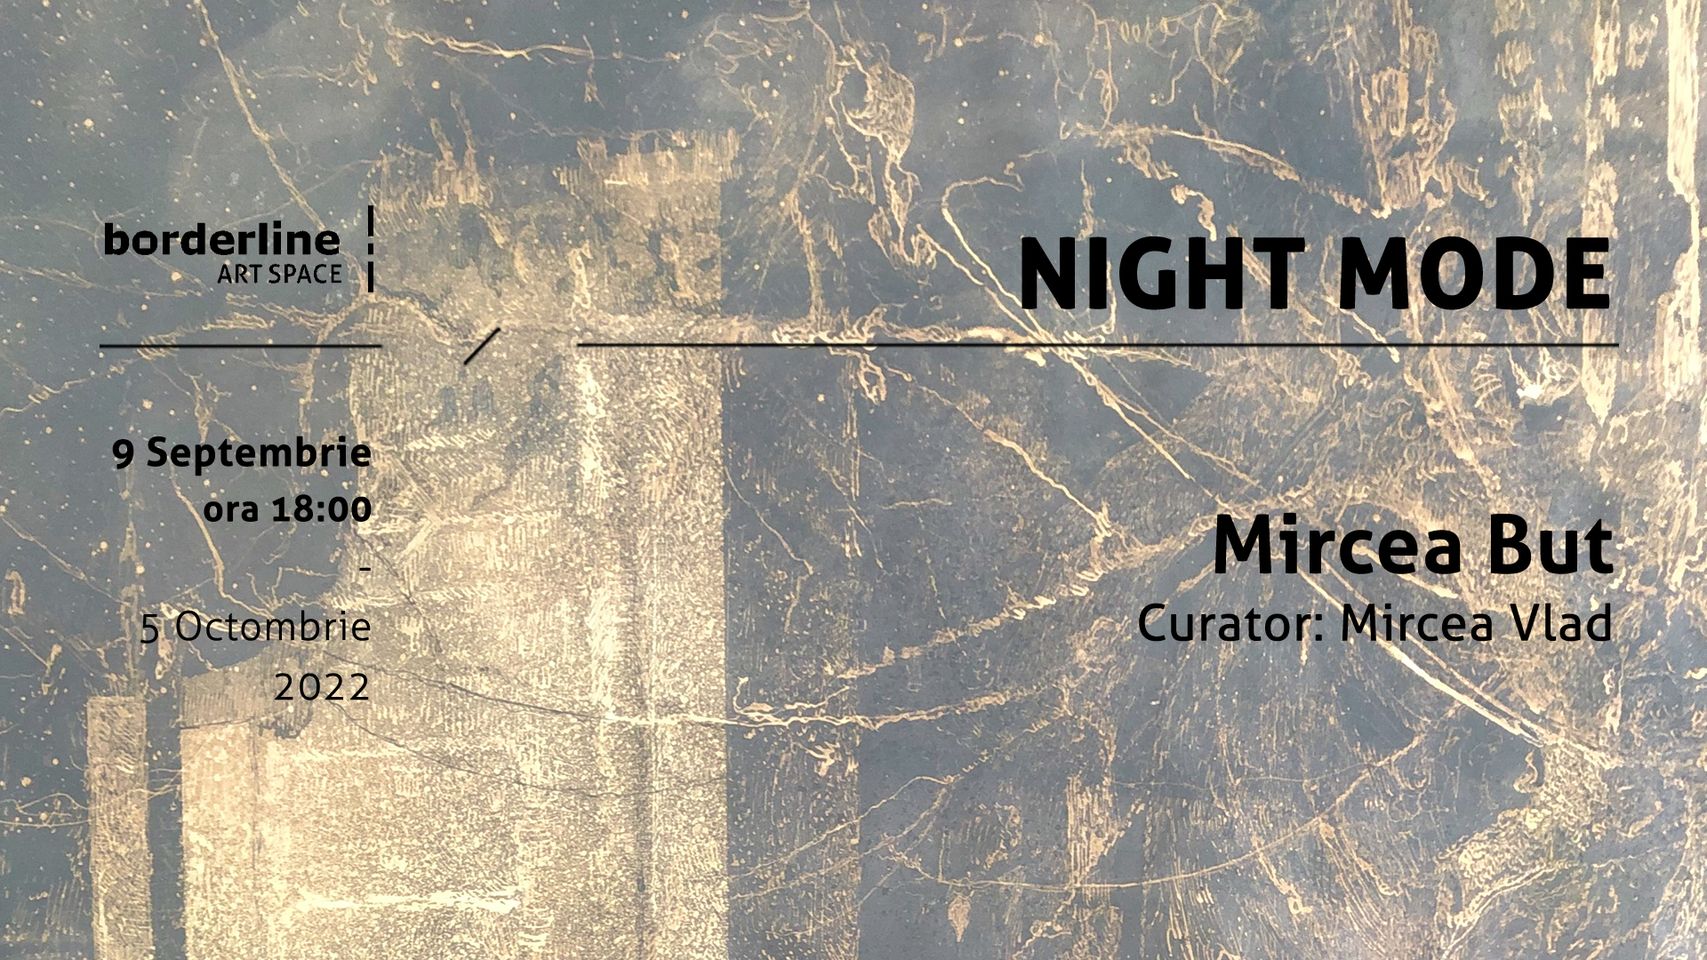 „Night Mode”, expoziţie de pictură şi desen de Mircea But, va fi prezentată la Borderline Art Space din Iaşi